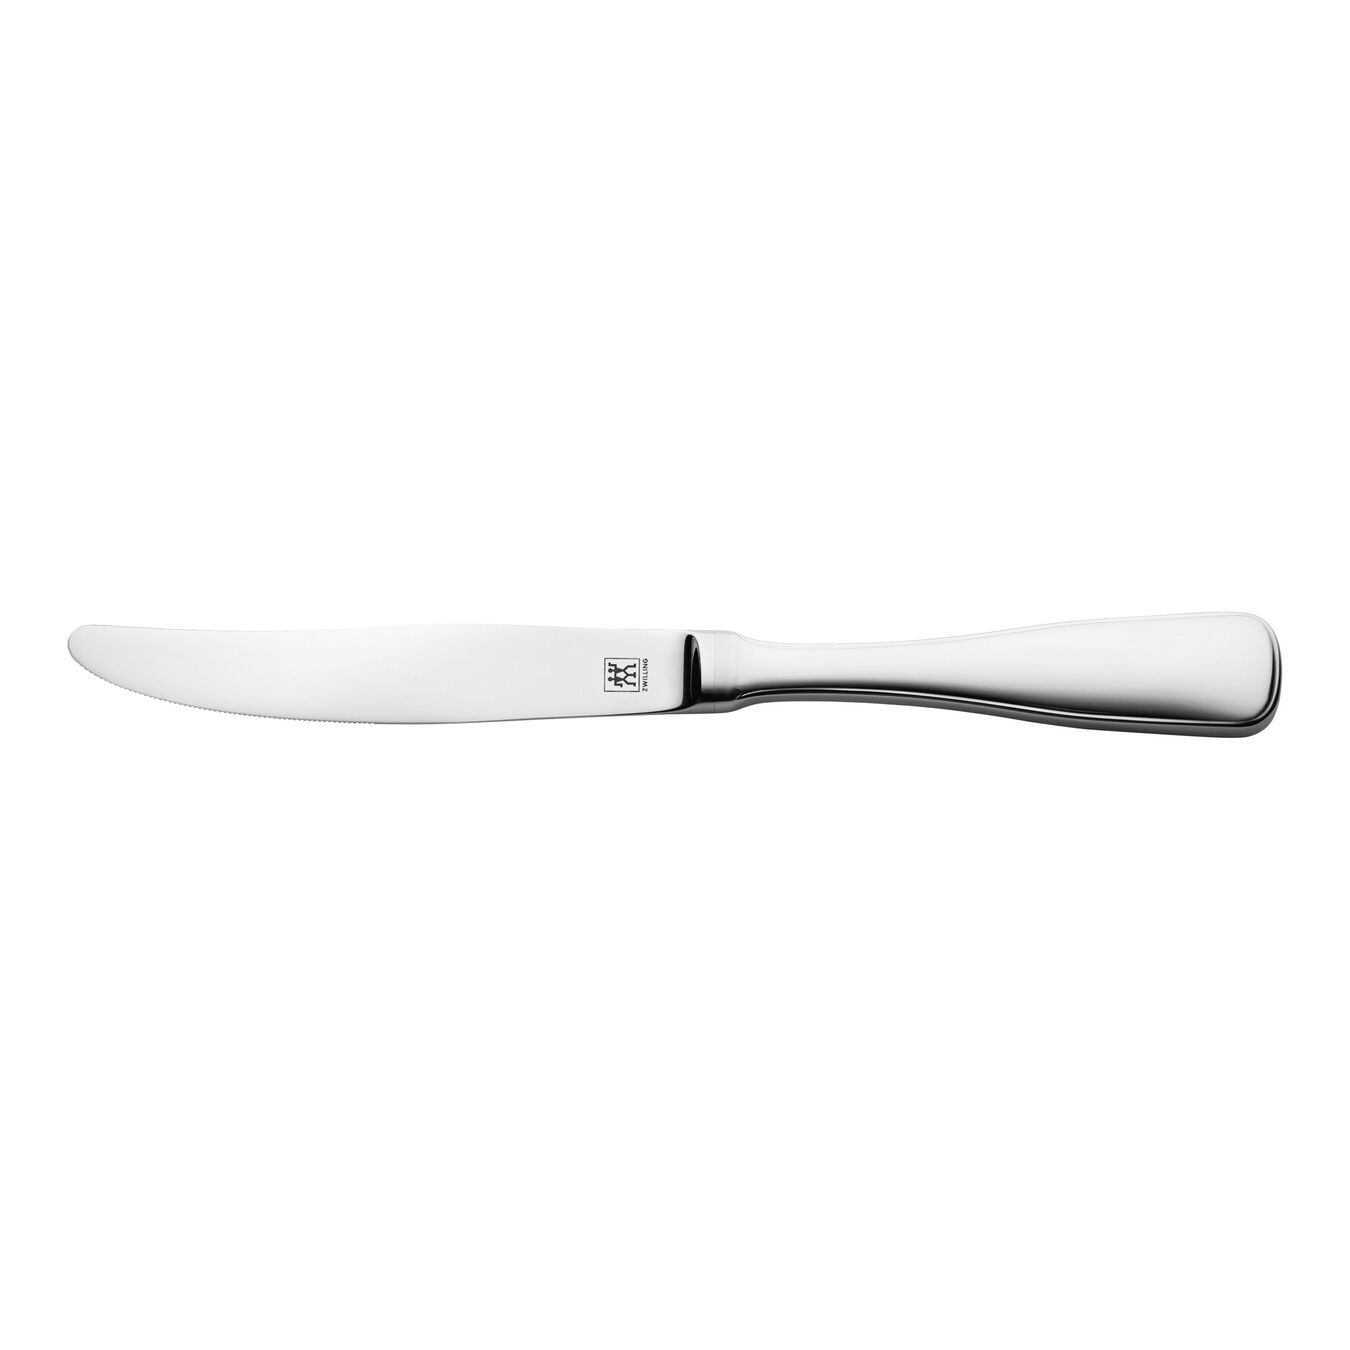 Bordkniv Poleret,,large 1